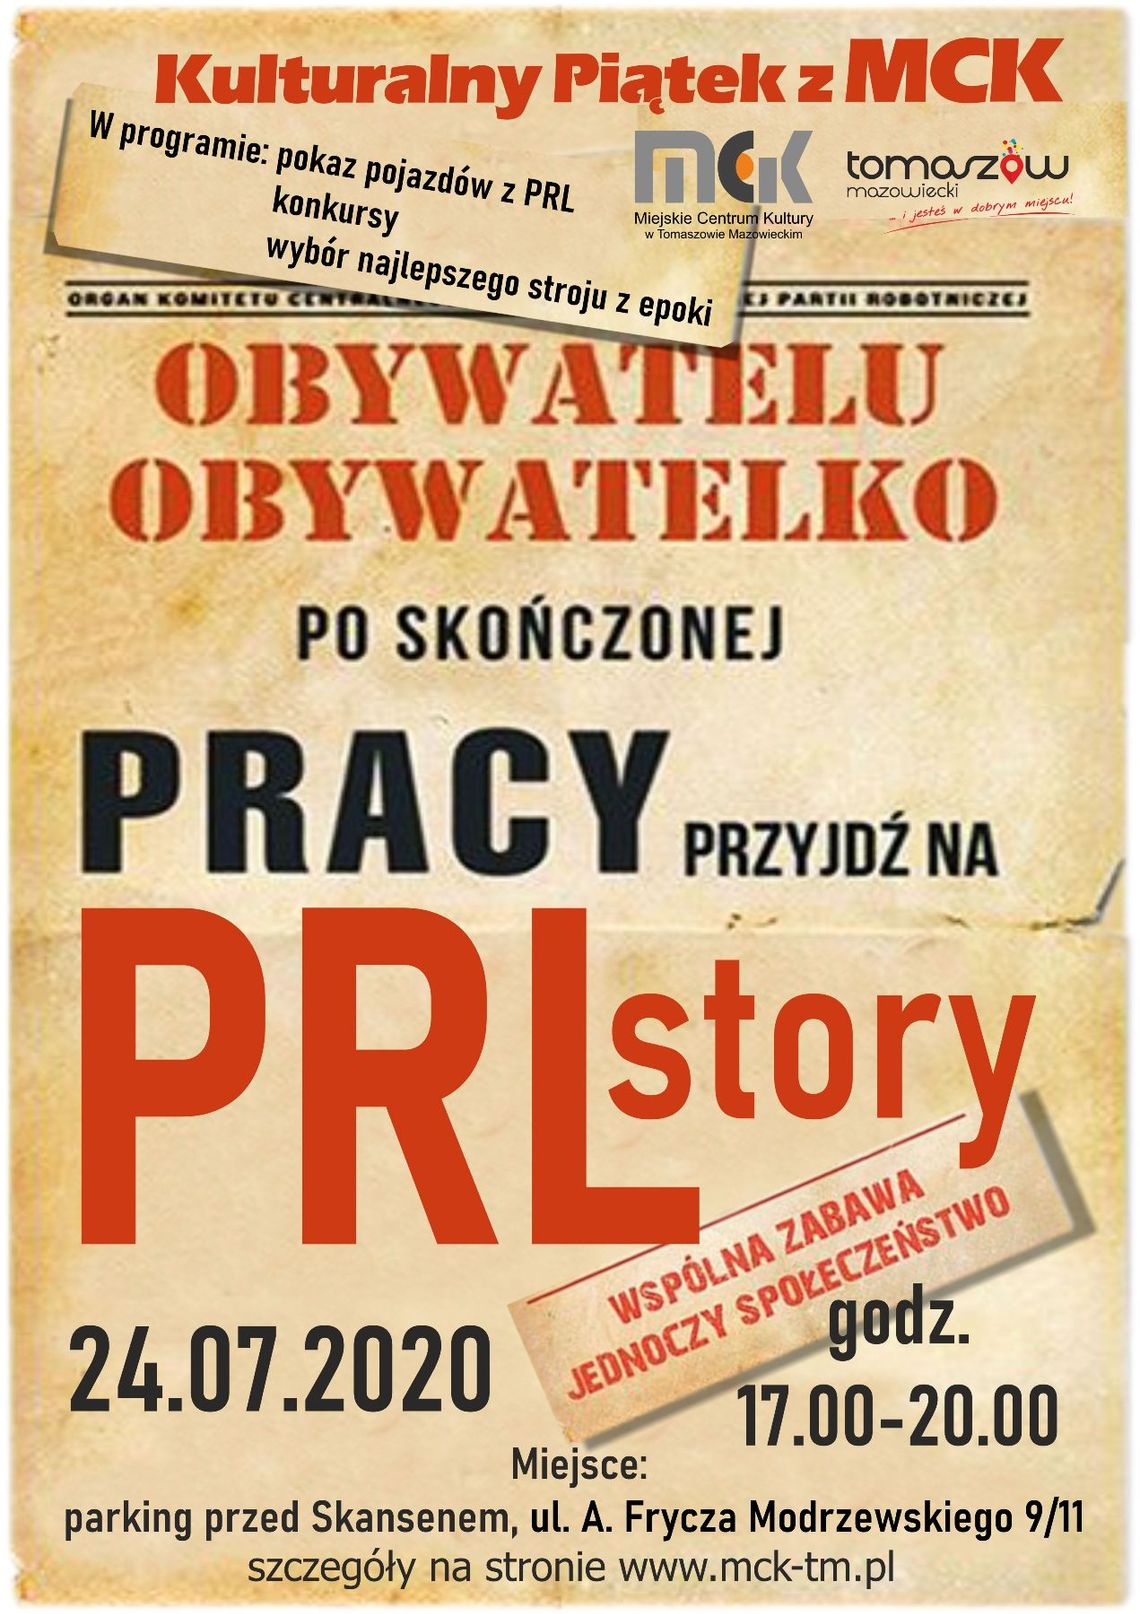 Kolejny „Kulturalny piątek z MCK” ‒ zapraszamy na „PRL Story”